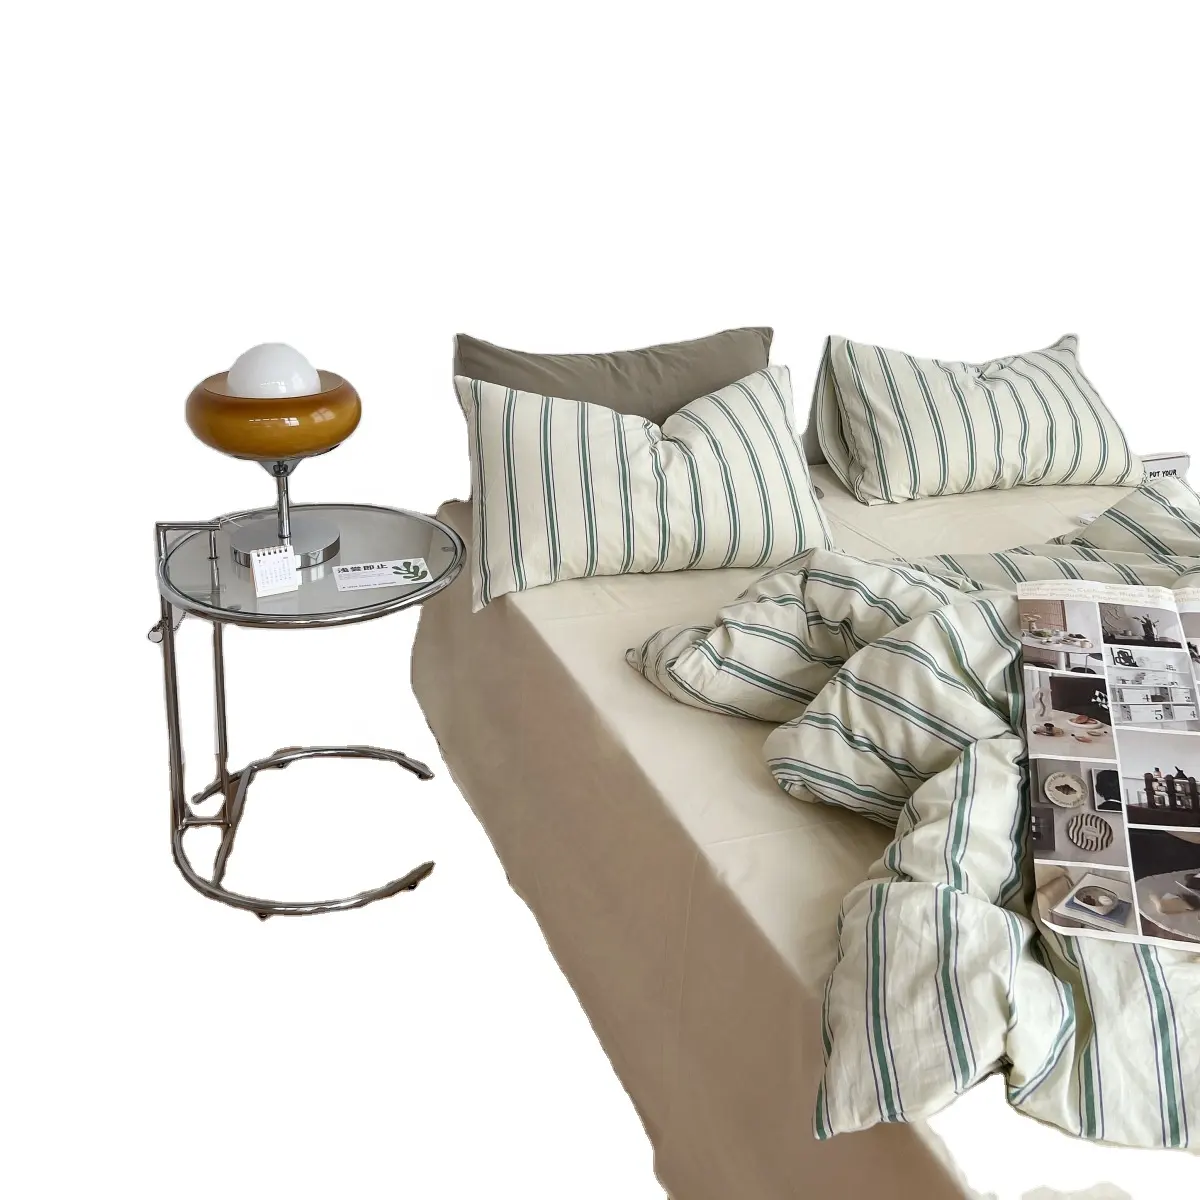 घरेलू बिस्तर धोया हुआ सूती धारीदार यार्न रंगा हुआ चेम्ब्रे डुवेट रजाई कवर बिस्तर सेट डुवेट कवर बिस्तर शीट तकियाकेस सेट